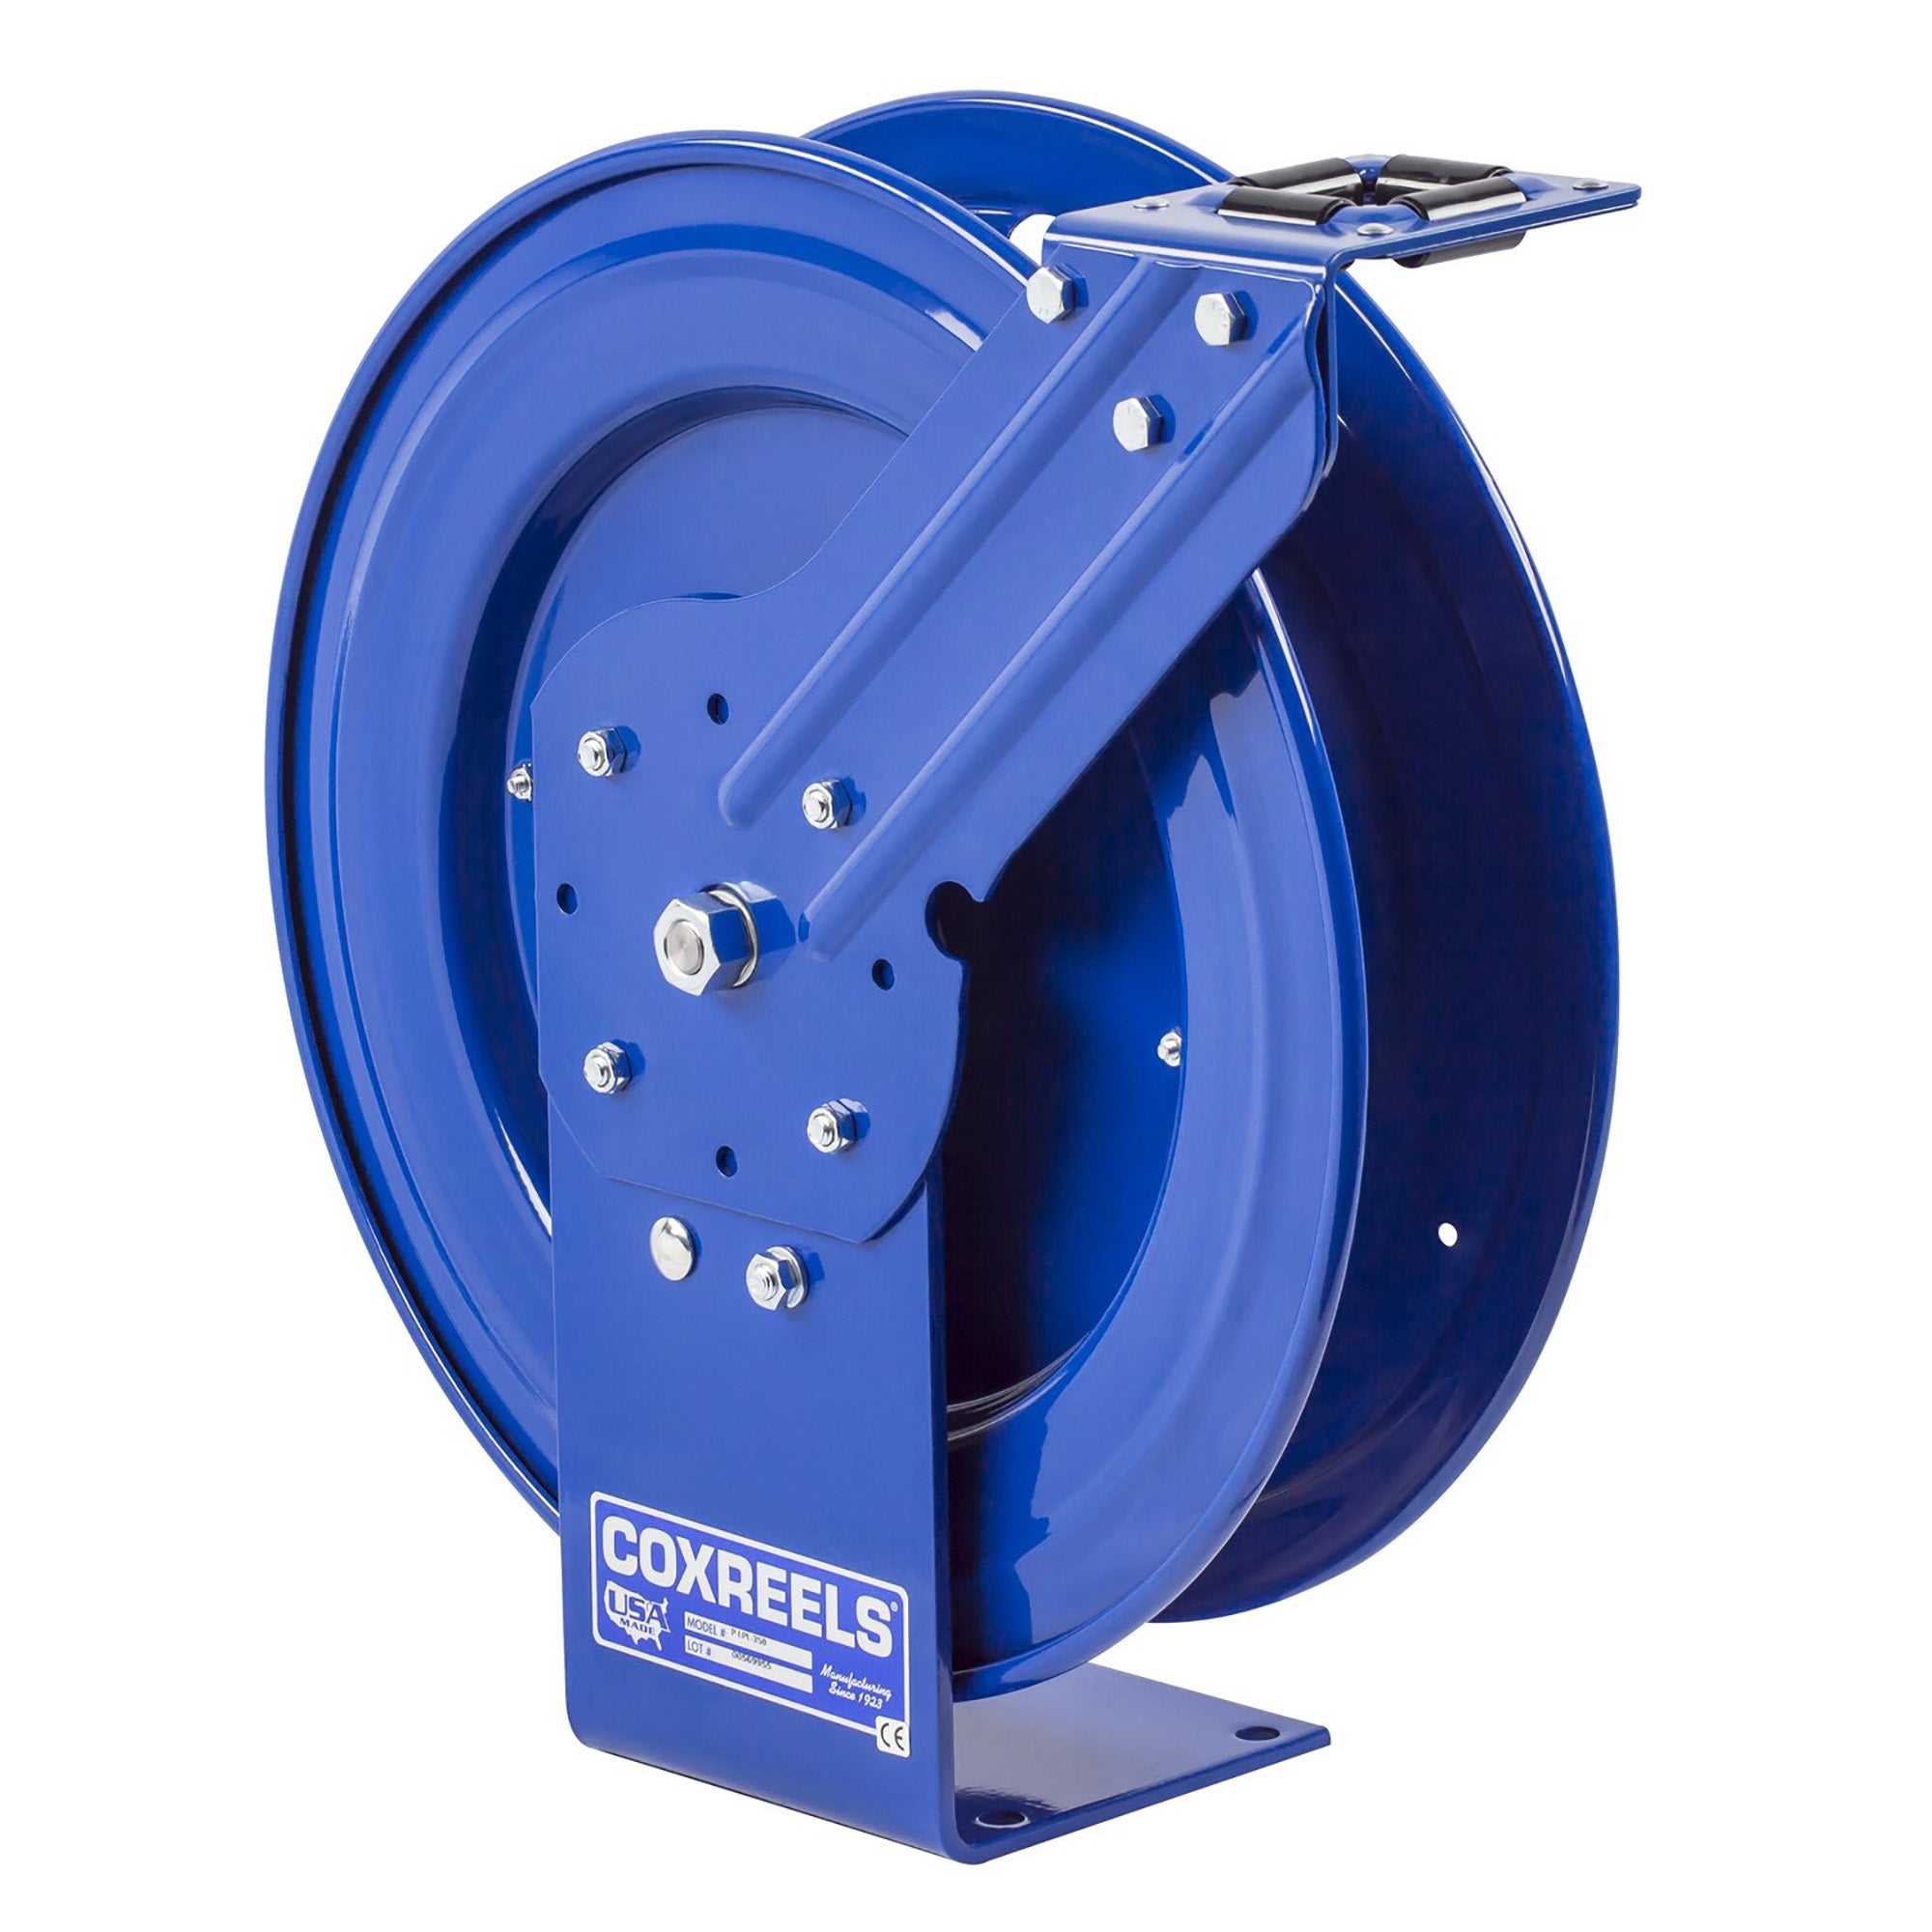 Coxreels P-LP-350 Hose Reel Specifications